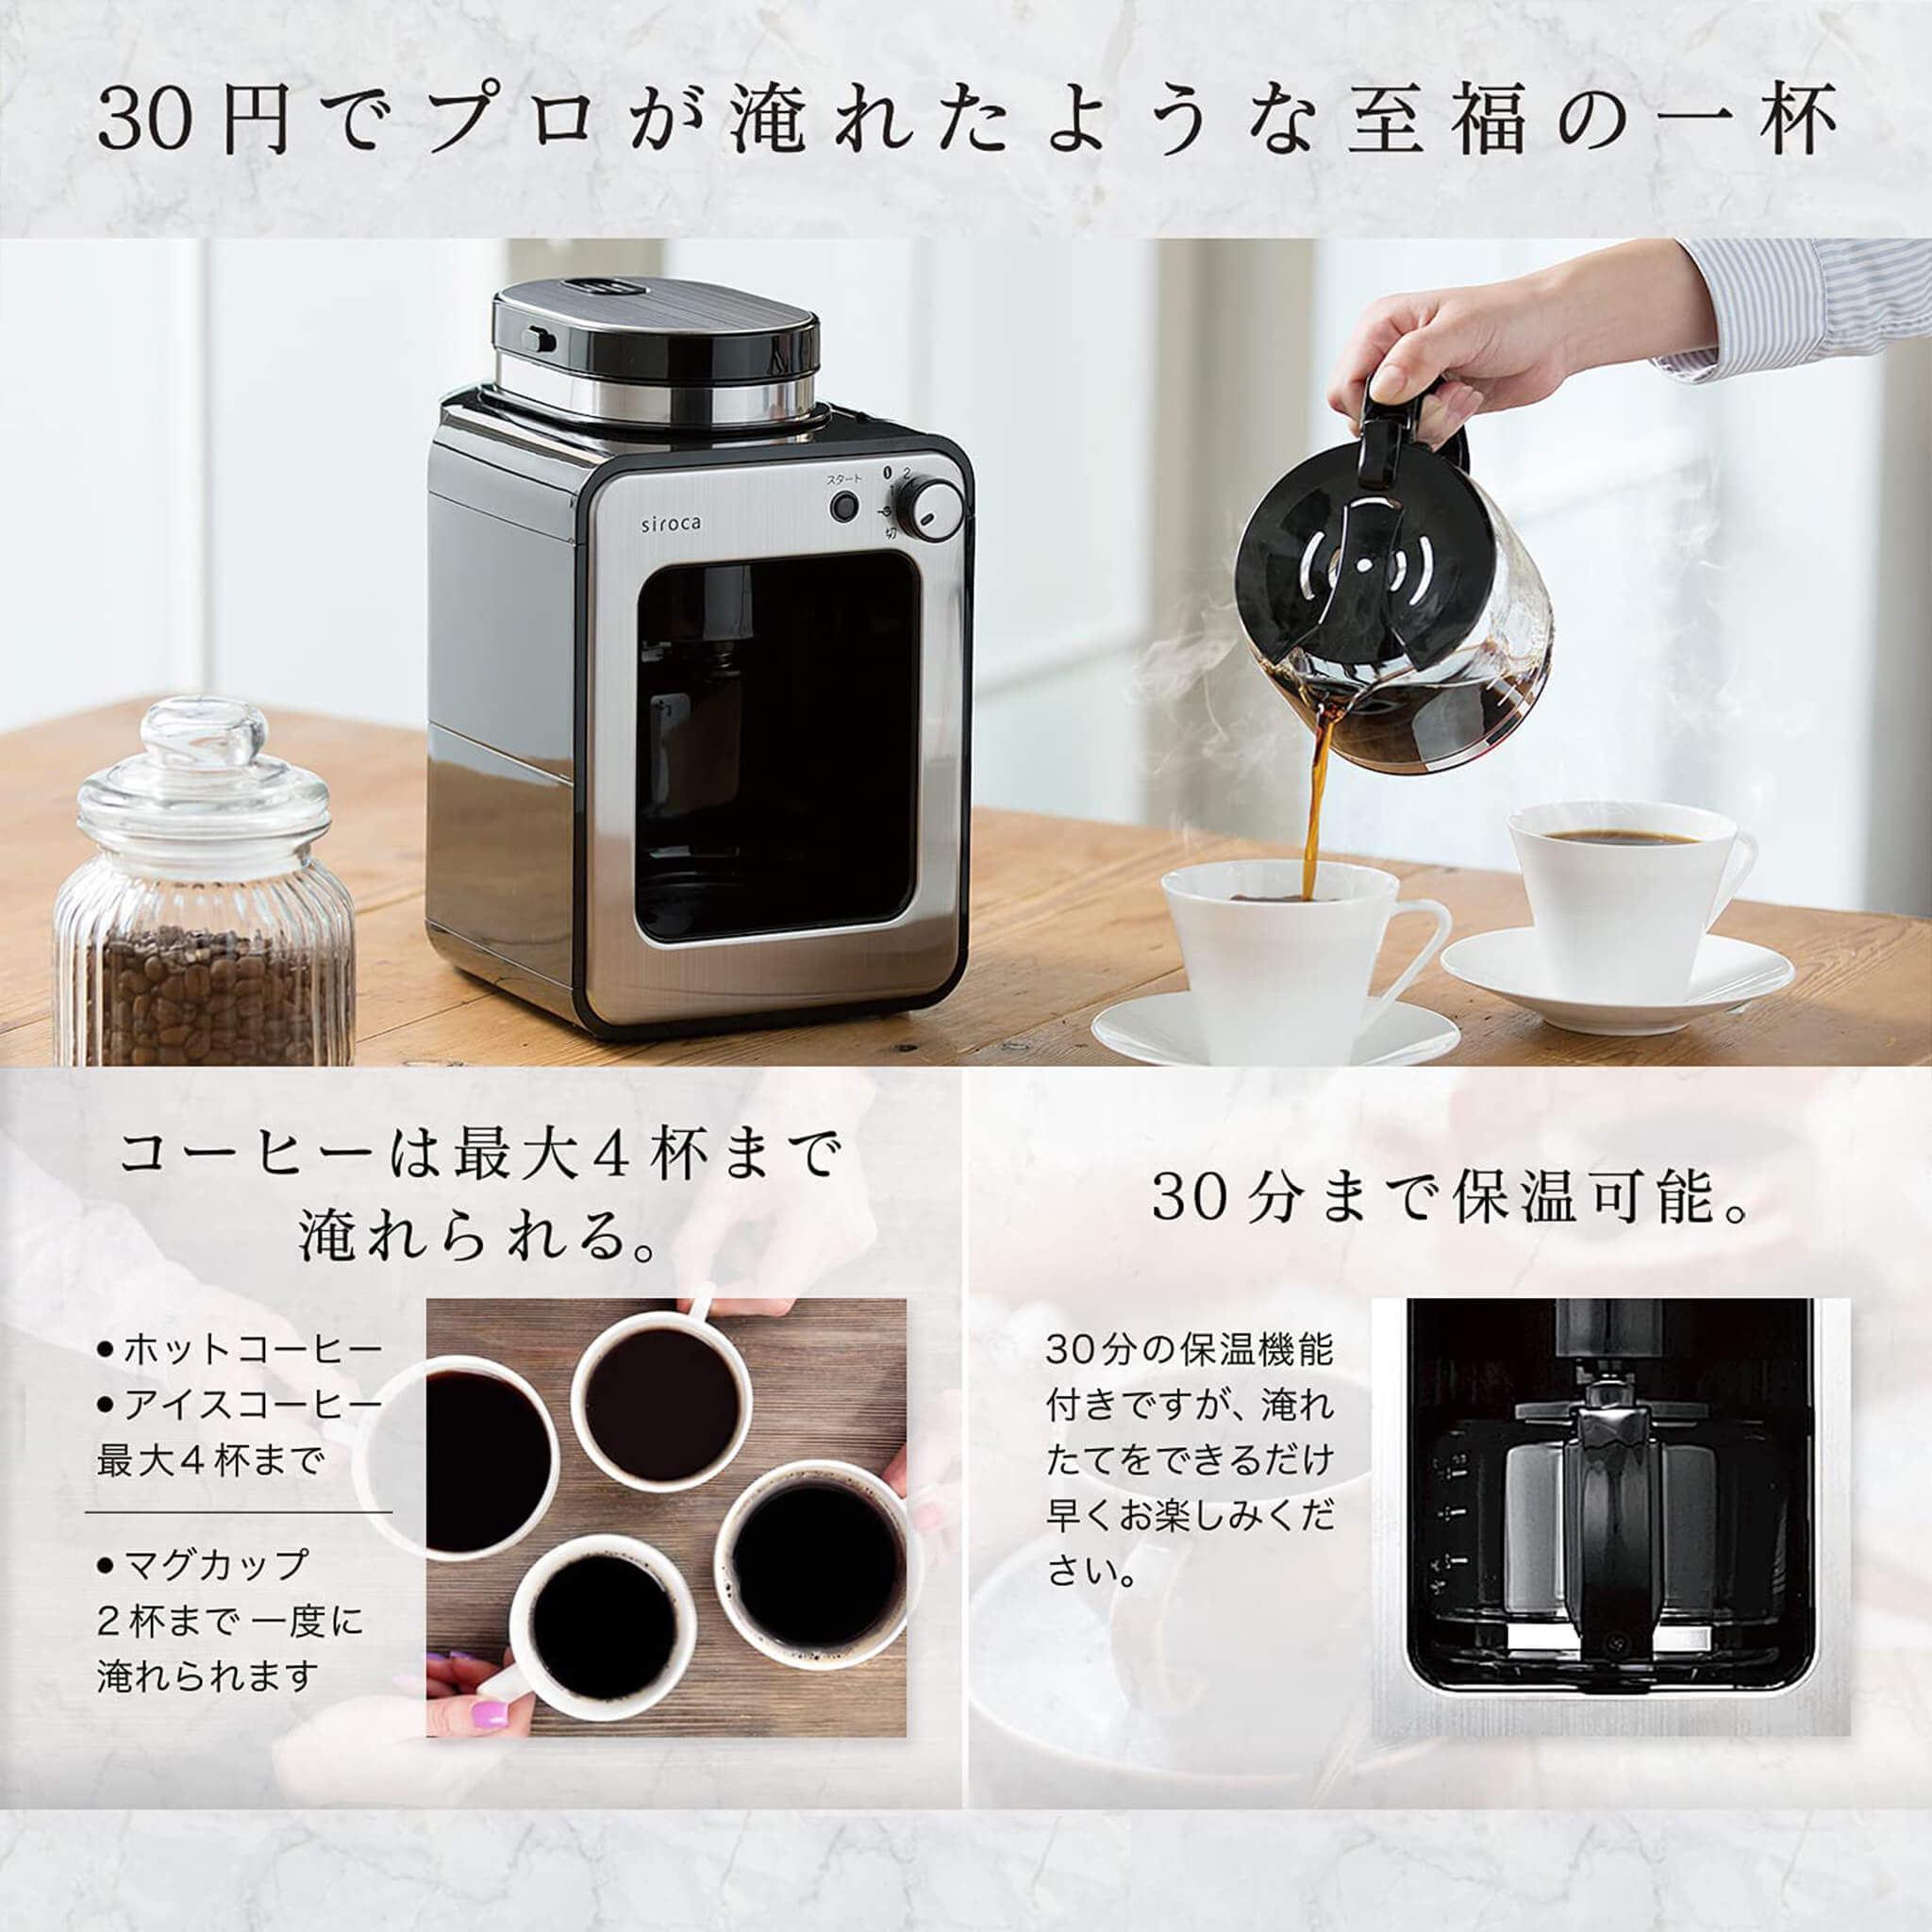 全自動コーヒーメーカー SC-A211 シロカオンラインストア